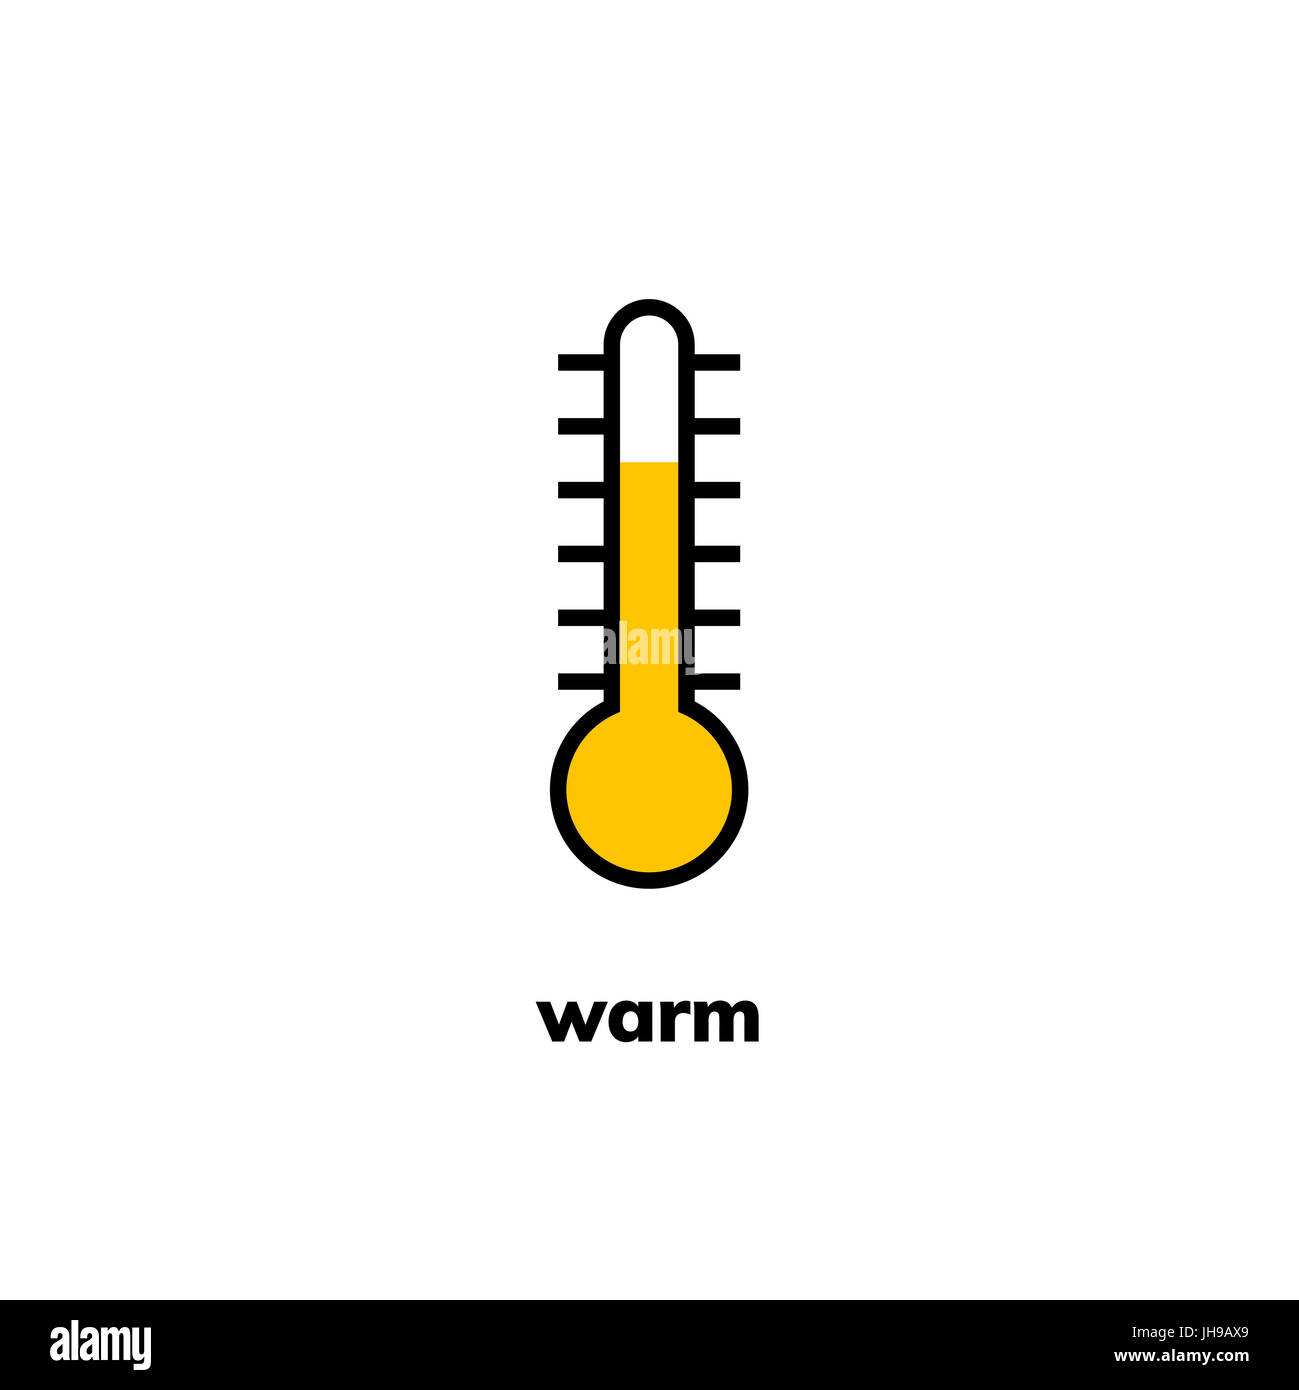 Icona della temperatura, clip art. A stretta gamma termometro a mercurio mostra un clima caldo Foto Stock